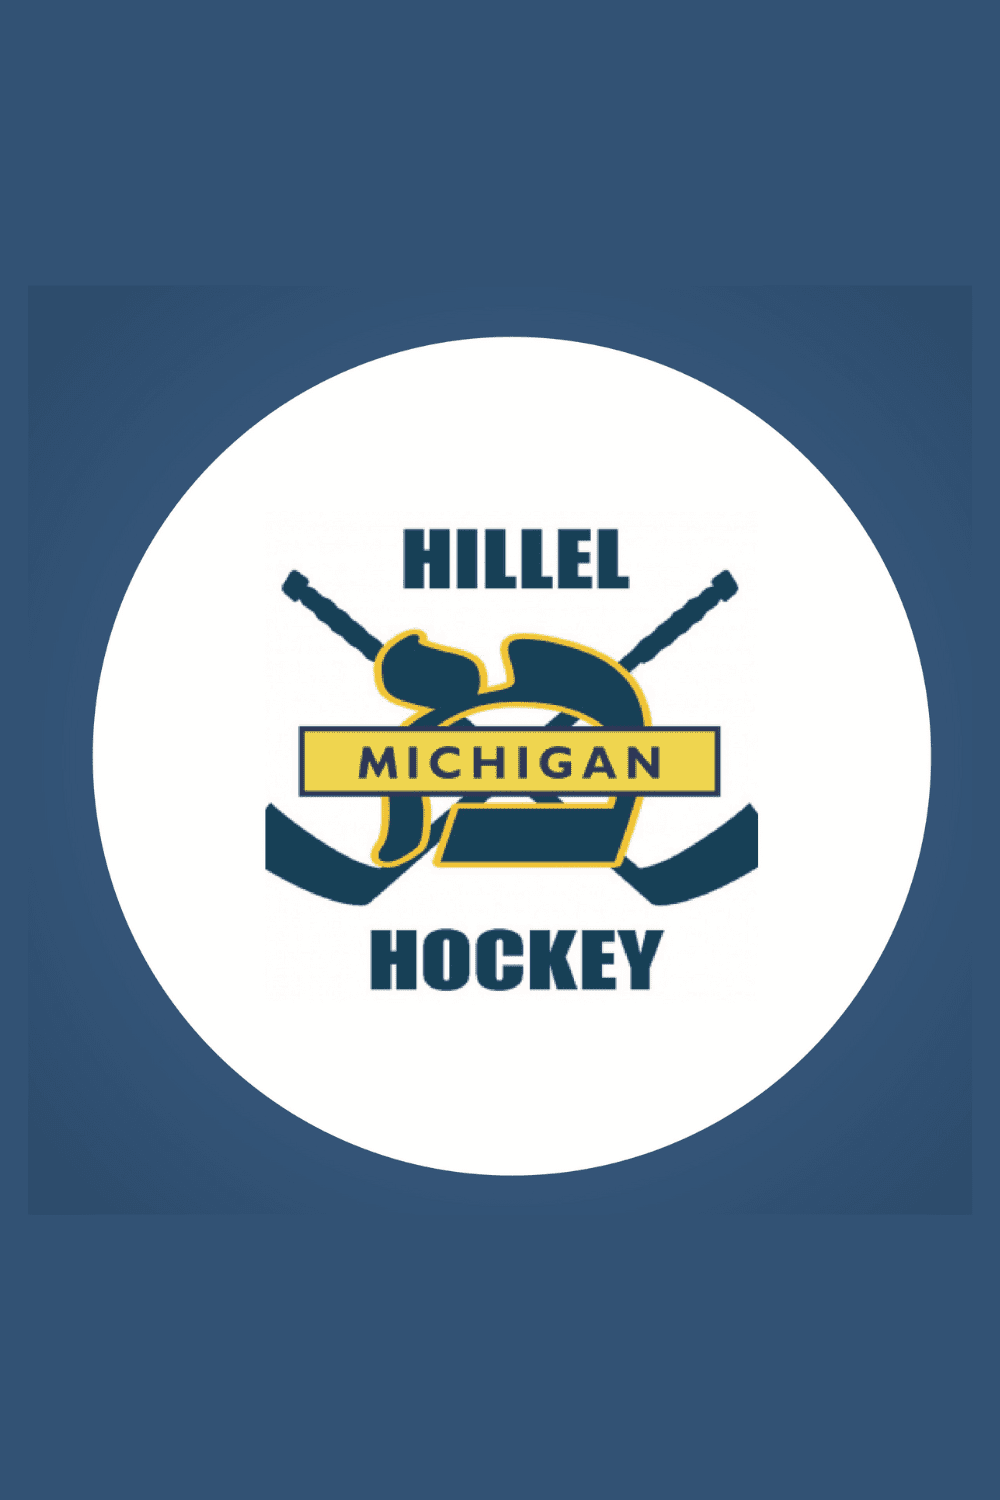 Hillel Ice Hockey Club